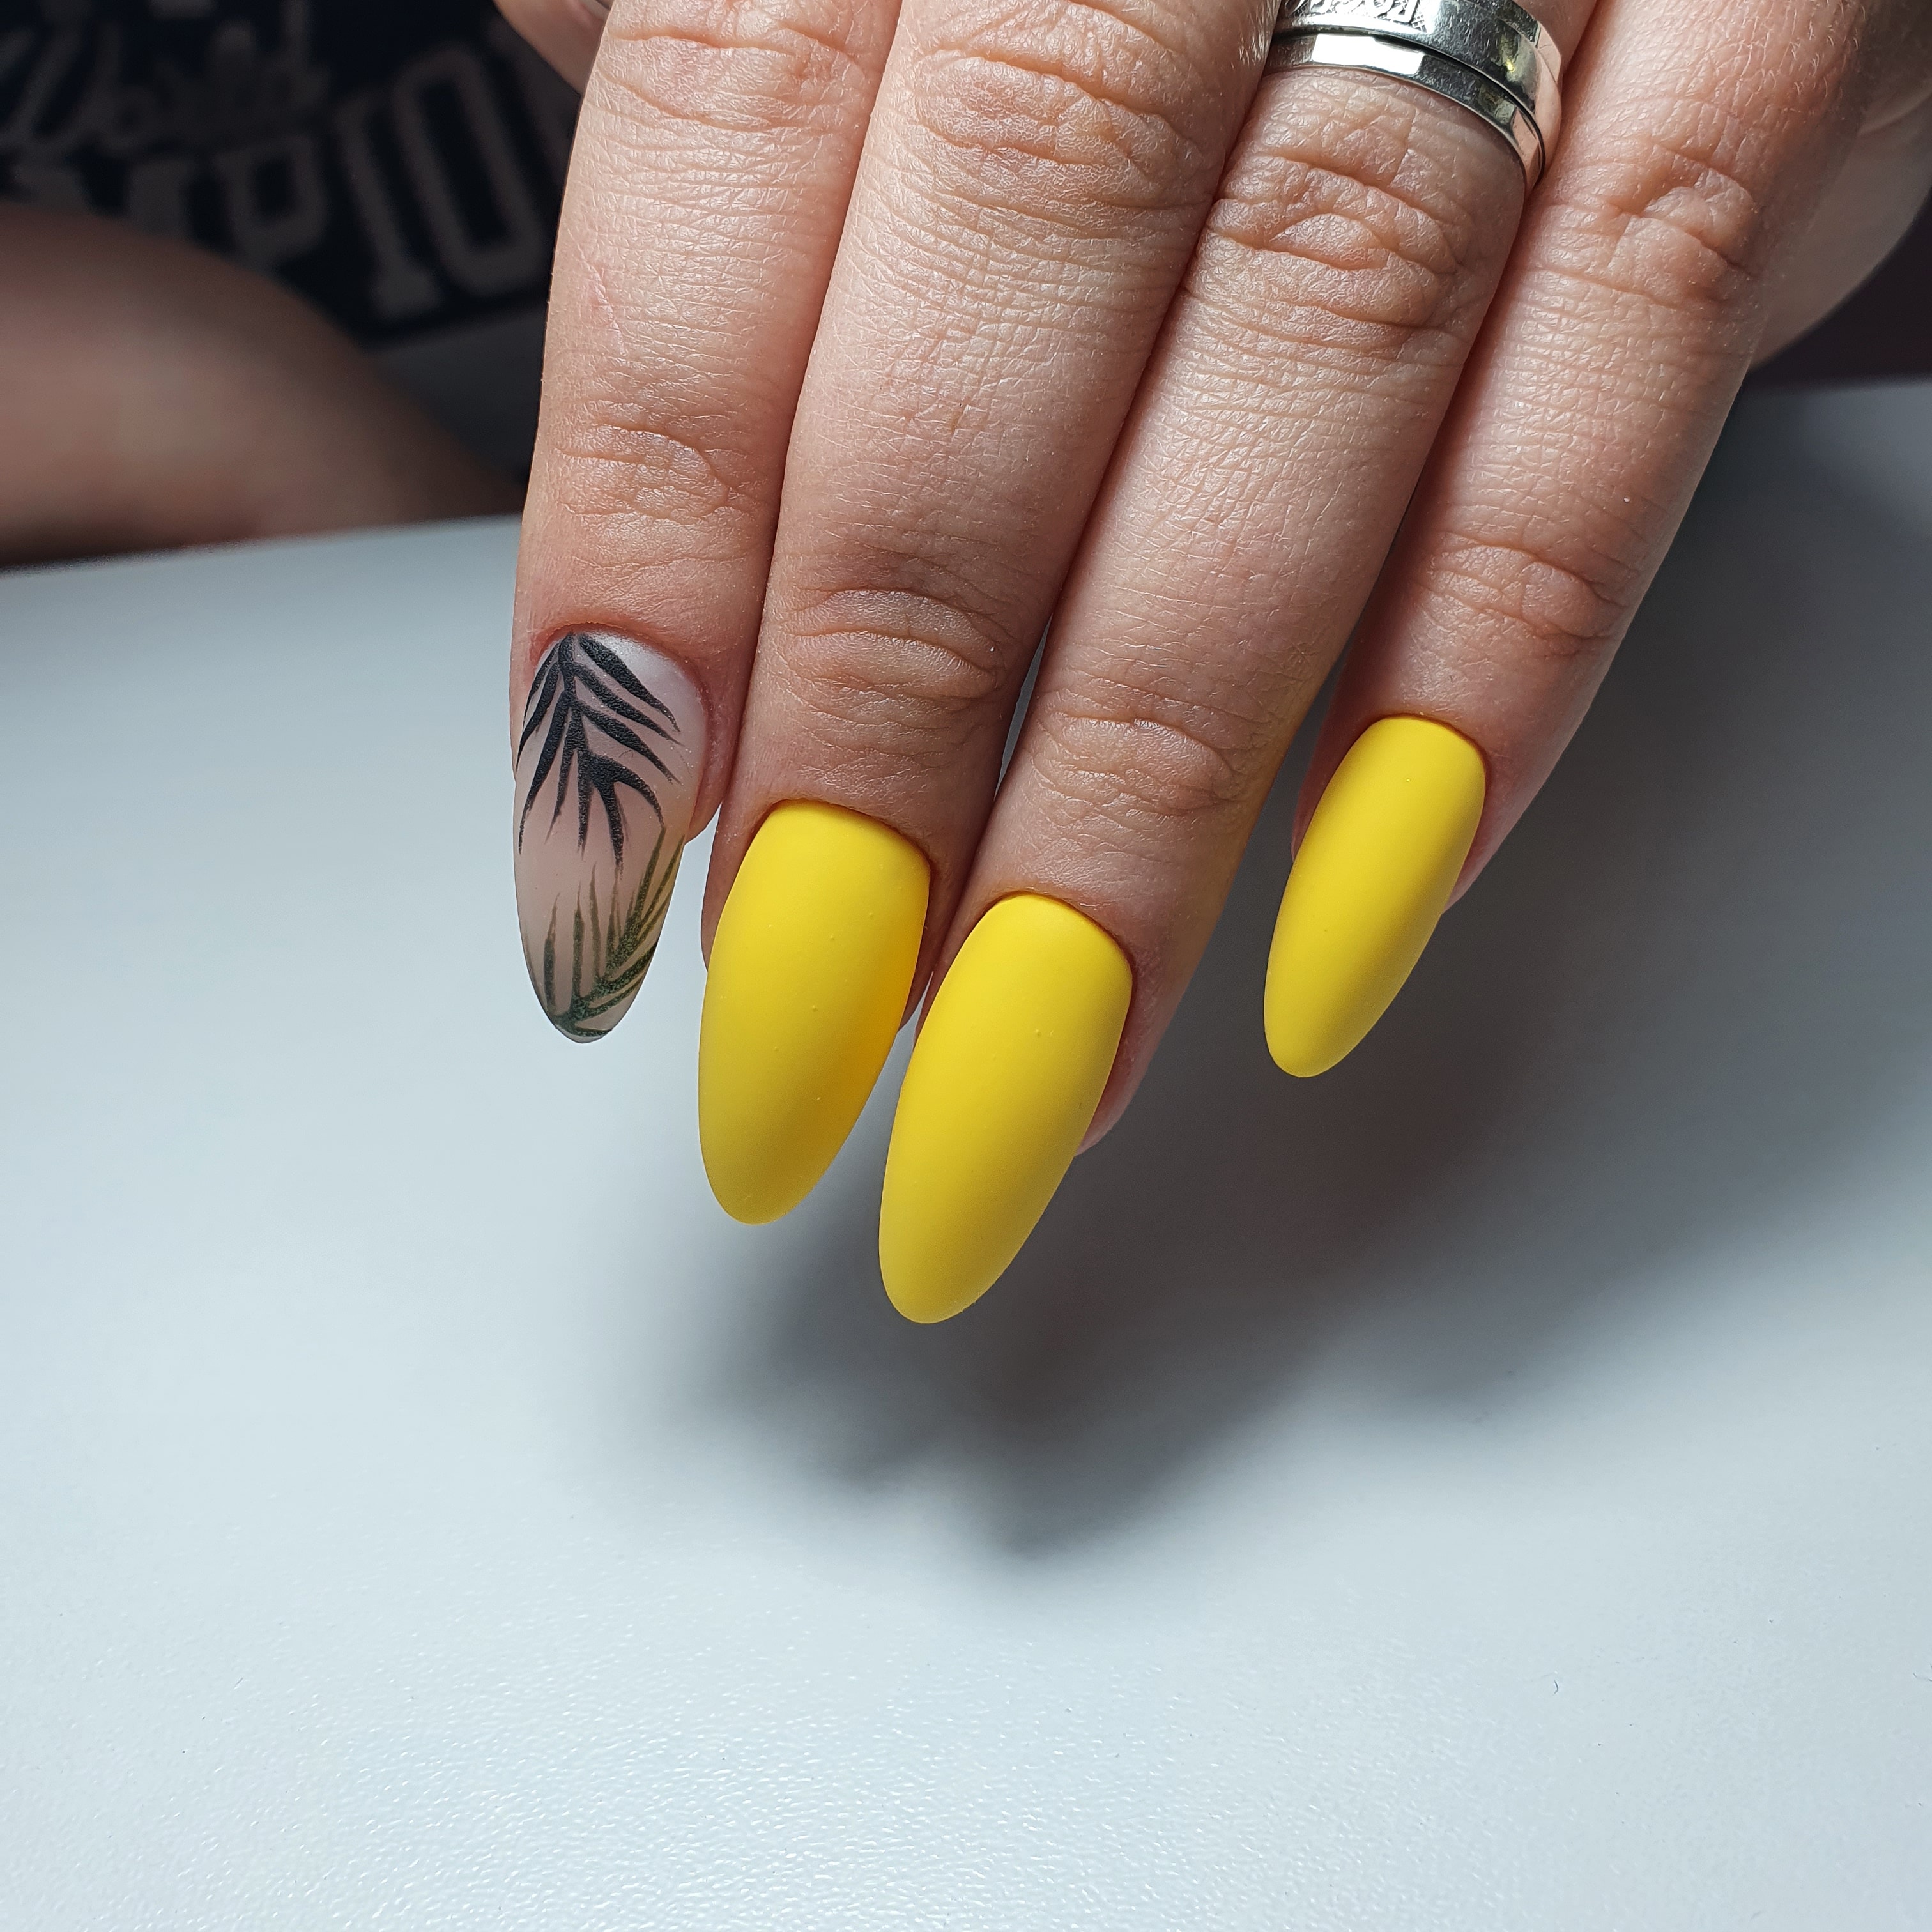 Матовый маникюр с растительным рисунком в желтом цвете на длинные ногти.